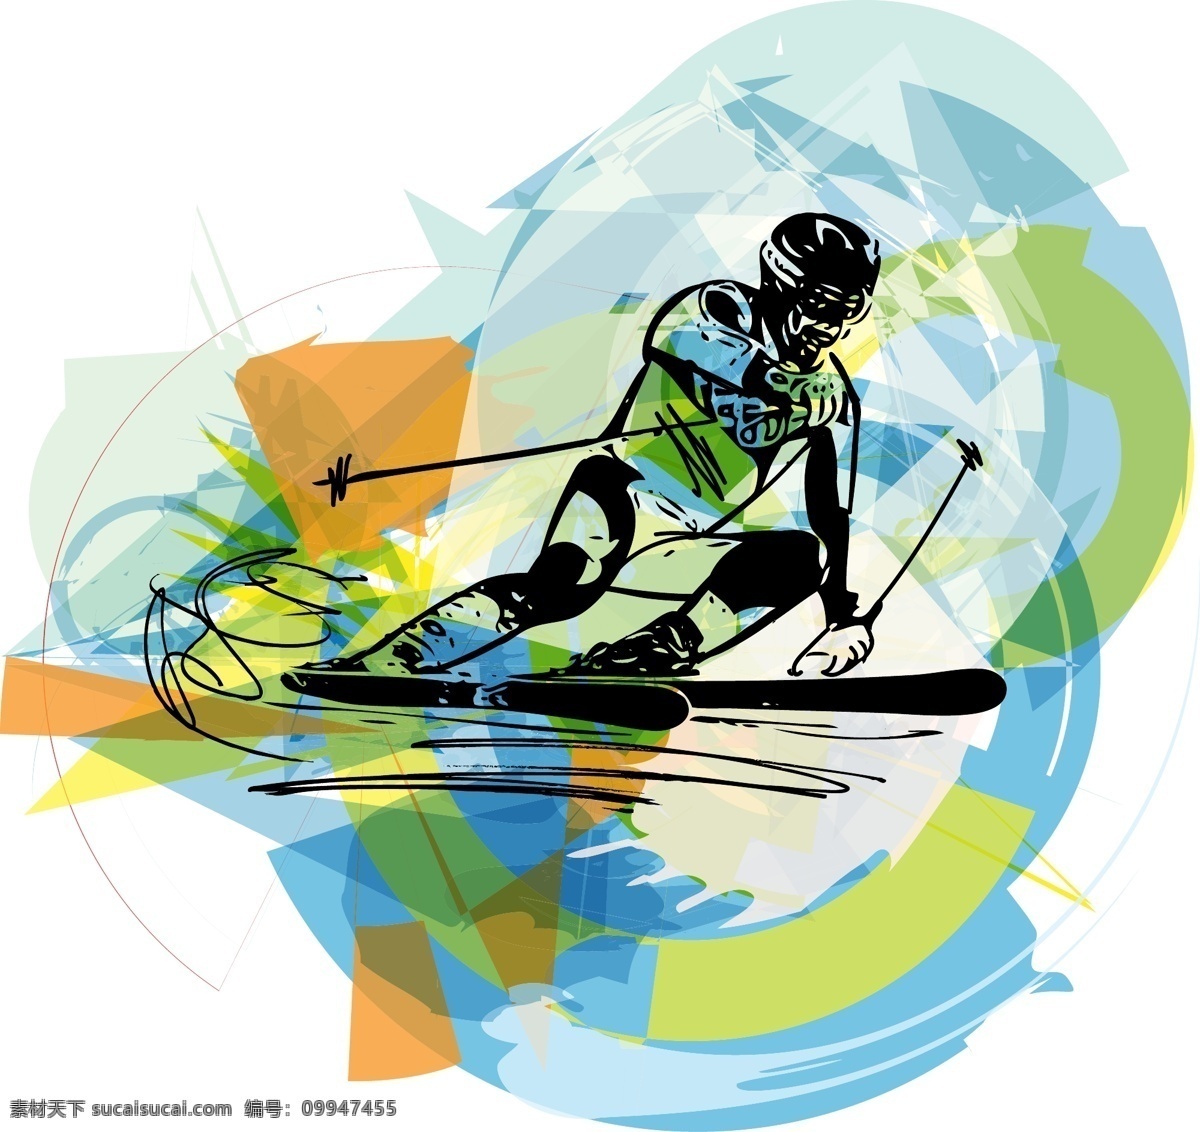 滑雪人物 滑雪 人物 运动 体育 体育运动 涂鸦 手绘 插画 背景 海报 画册 矢量人物 人物图库 生活人物